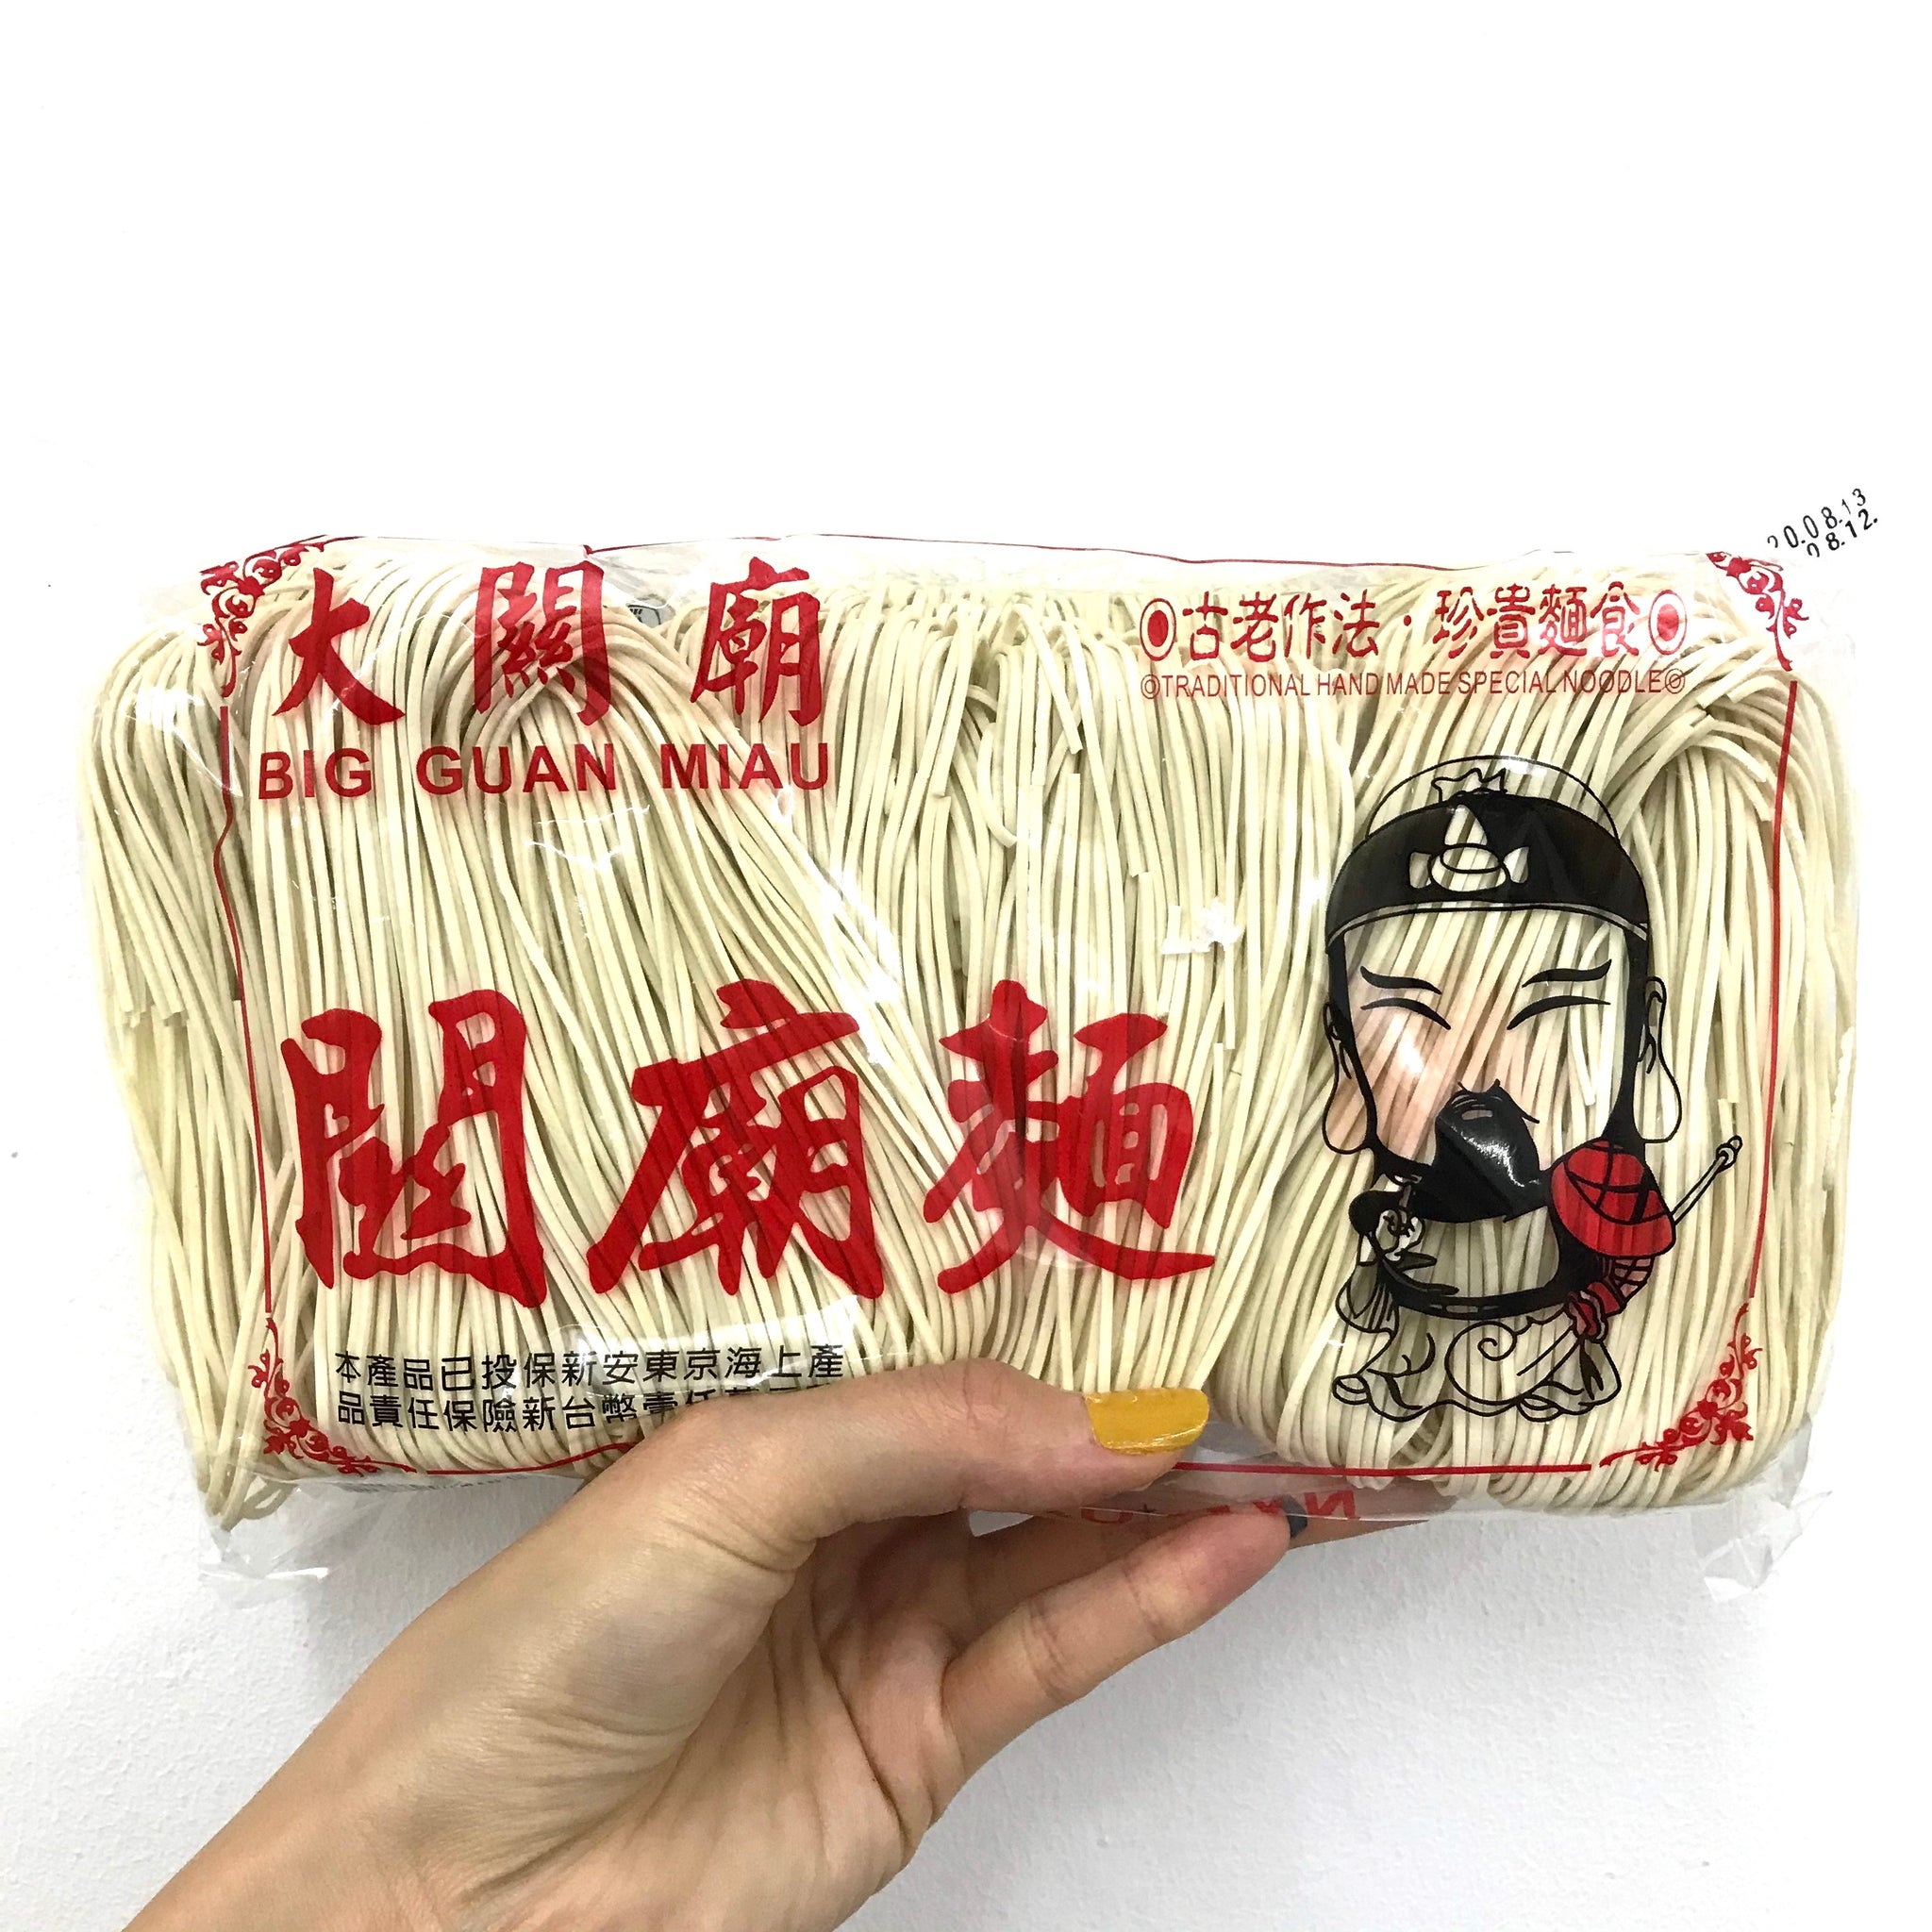 Taiwan Guan Miao noodles 450g